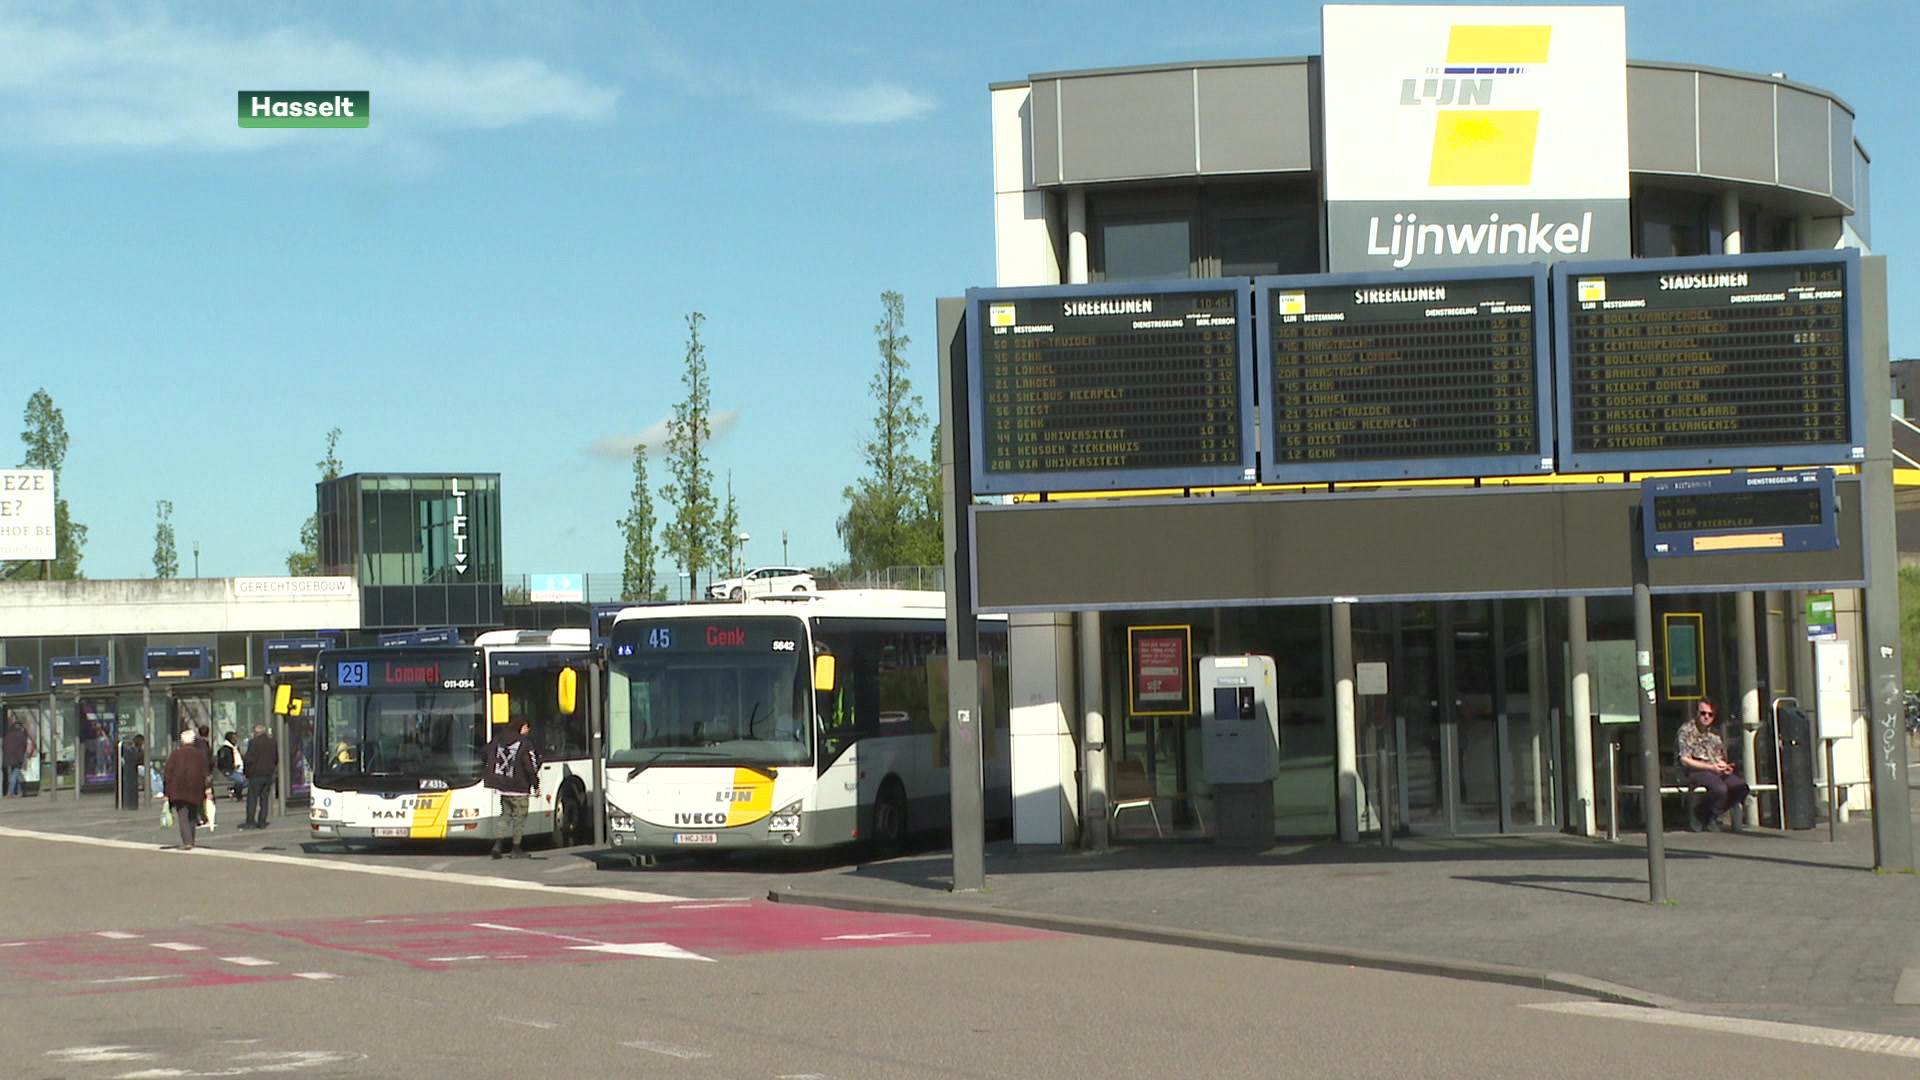 Reizigers willen meer toezicht in station Hasselt na aanranding minderjarig meisje